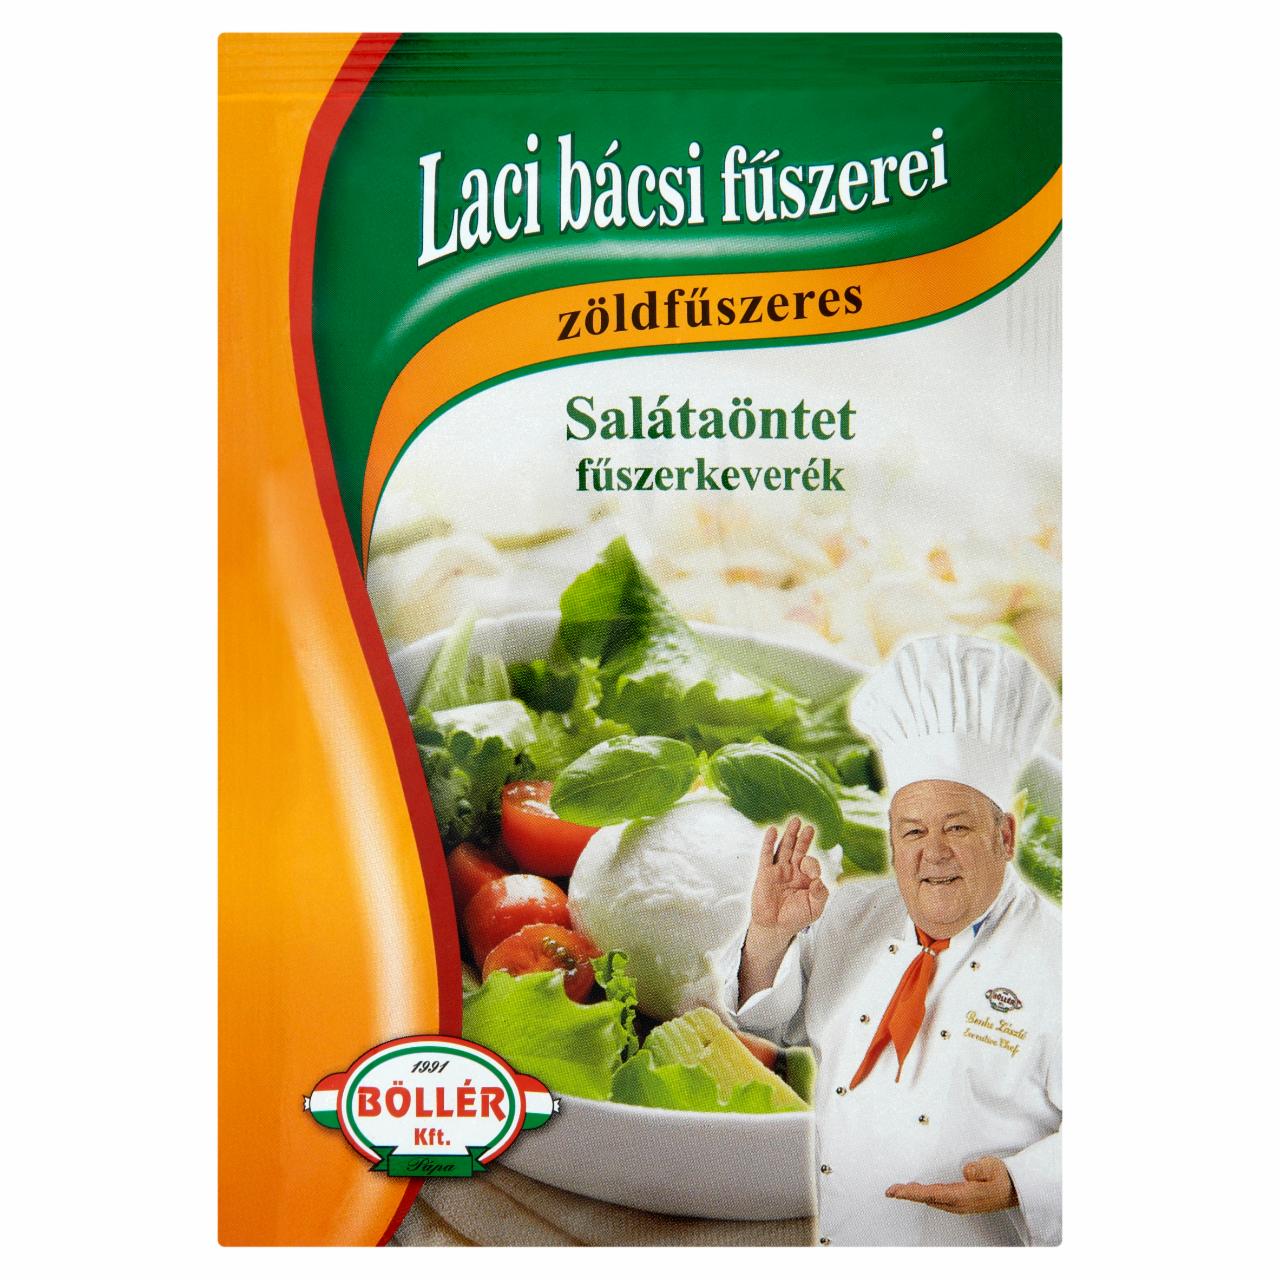 Képek - Böllér Laci Bácsi Fűszerei zöldfűszeres salátaöntet fűszerkeverék 20 g